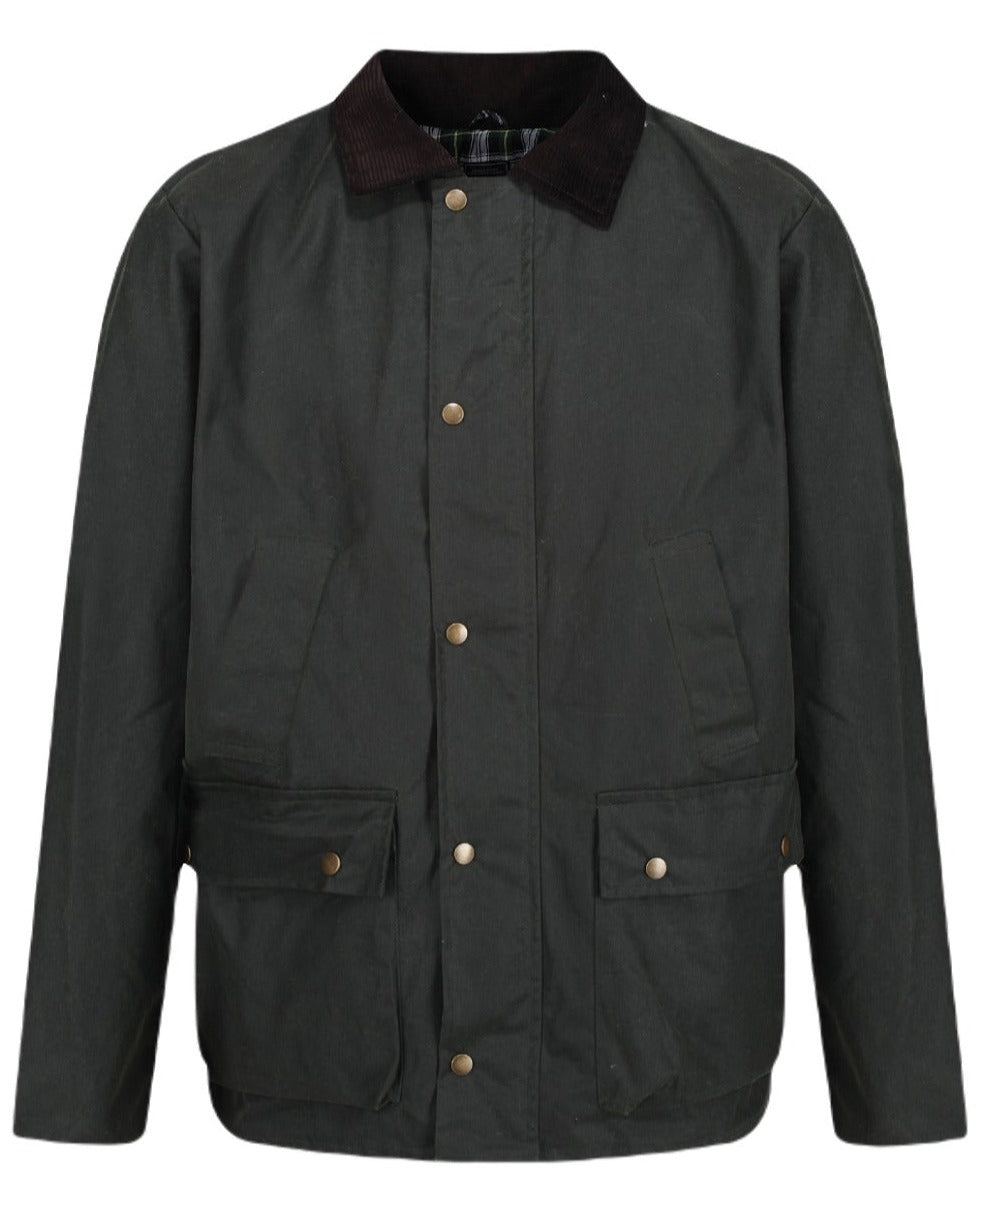 Regatta Banbury Wax Jacket in Dark Khaki 